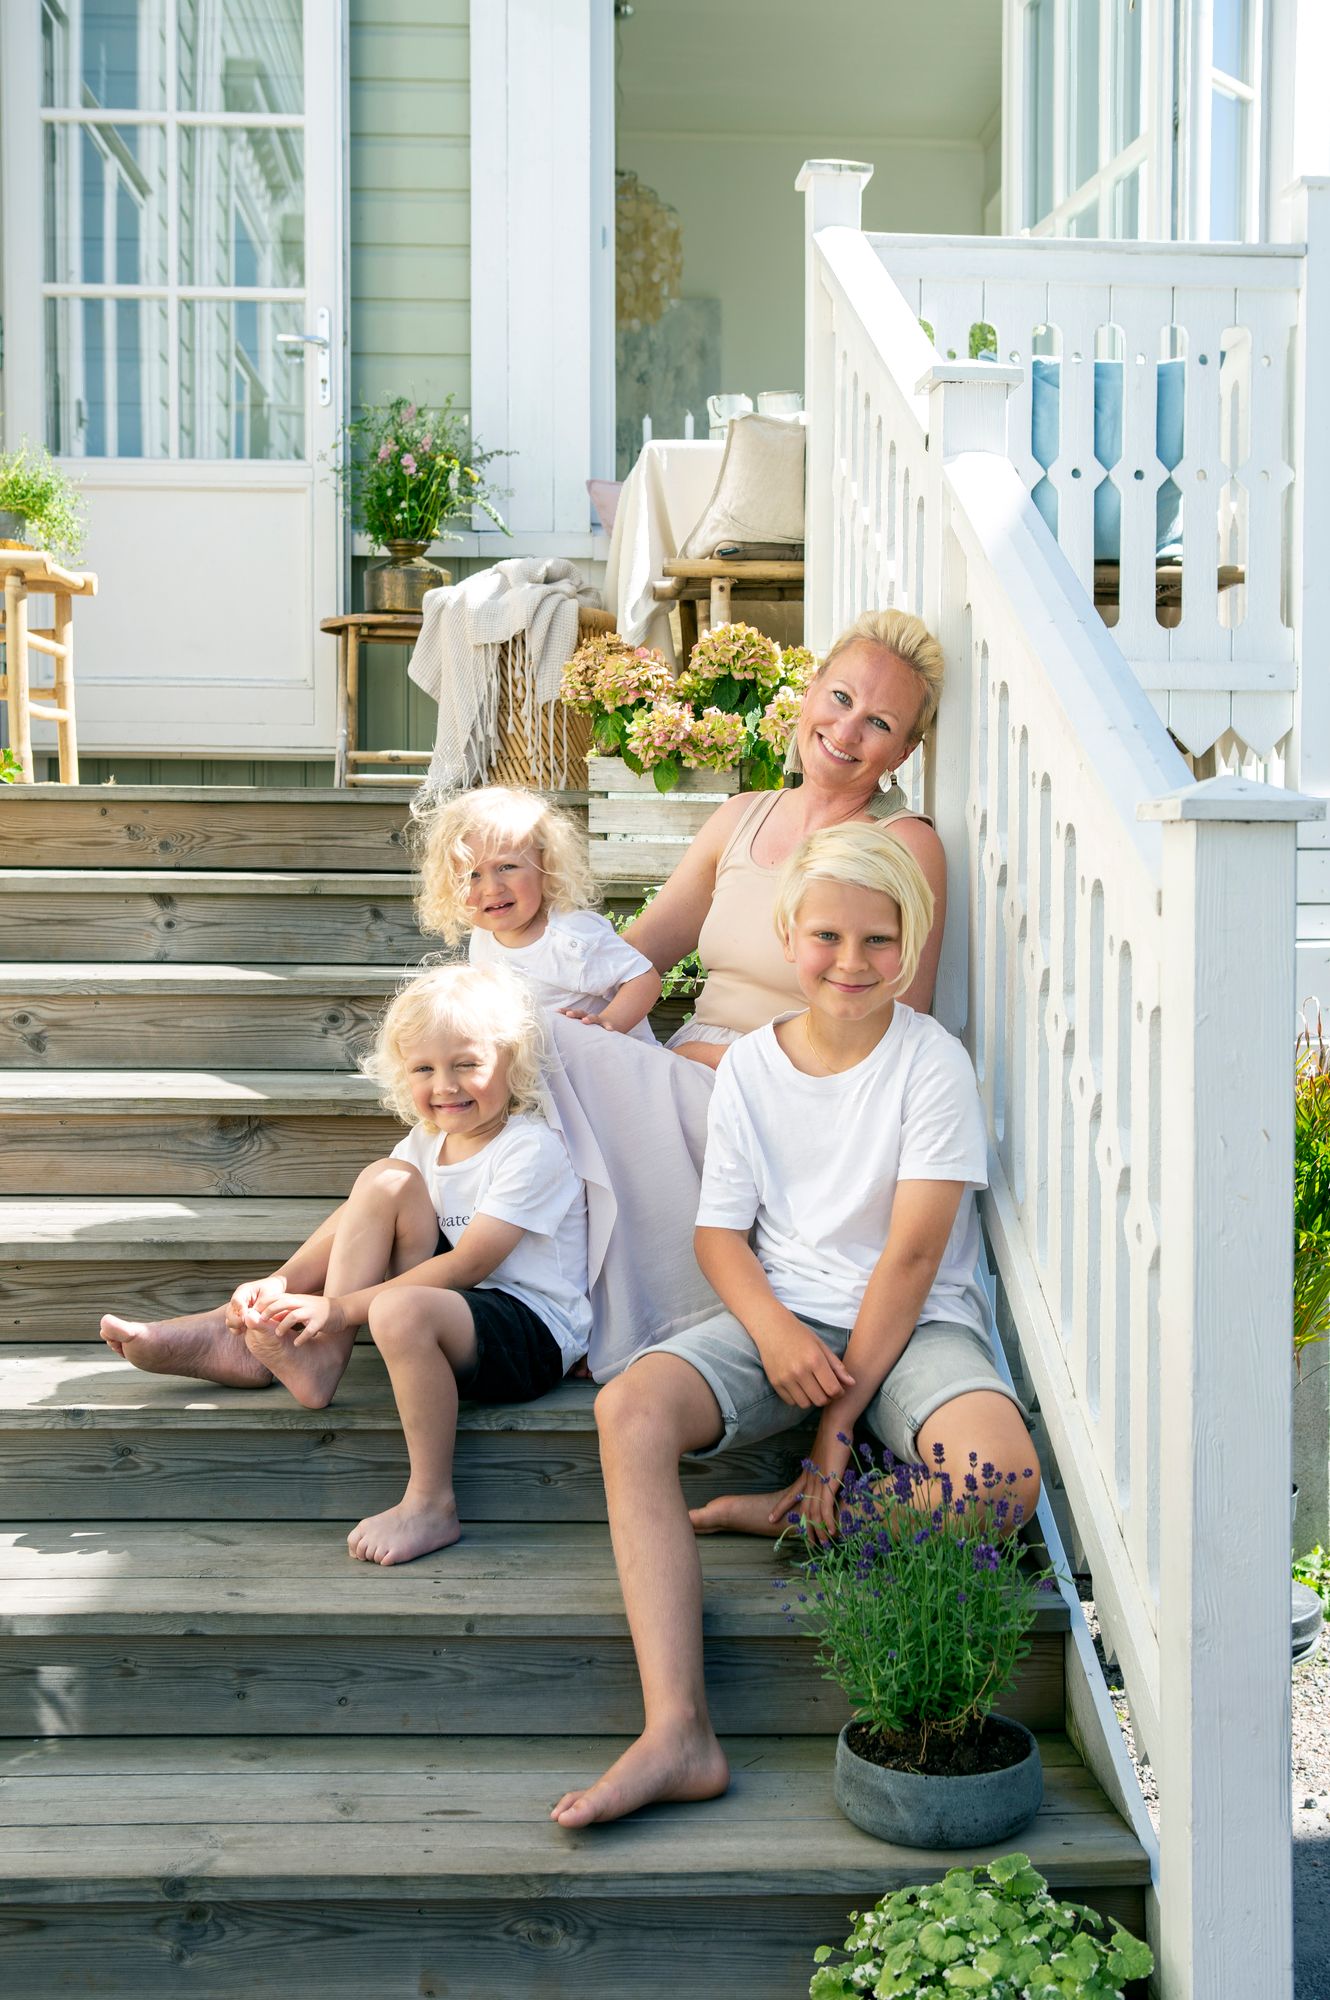 Riikka näki jo ensimmäisessä asuntonäytössä mielessään koko perheen nauttivan portailla aurinkoisista kesäpäivistä.